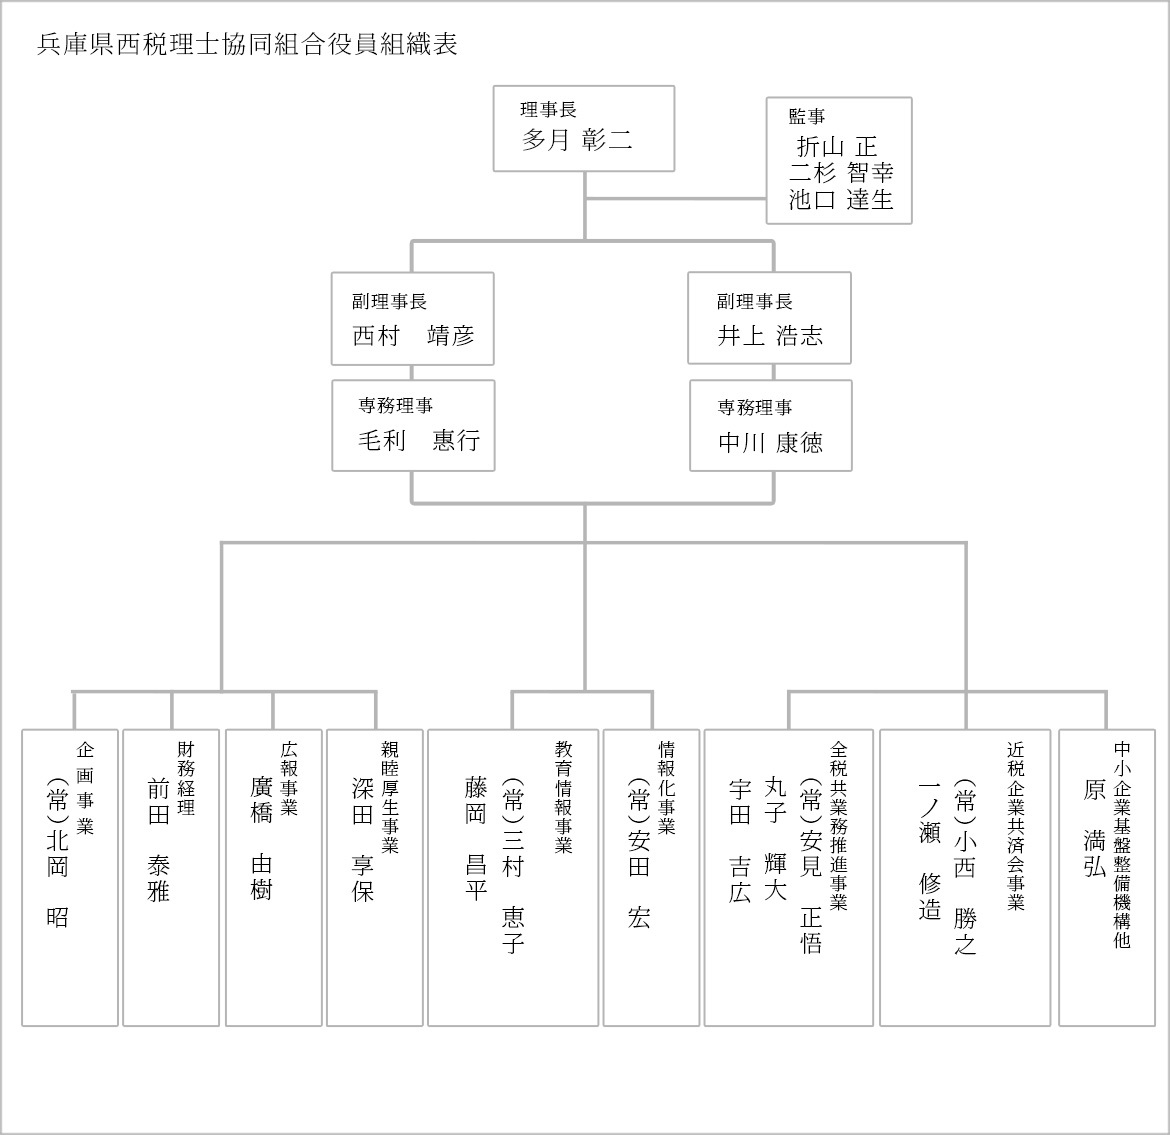 表：兵庫西税理士協同組合の役員組織表